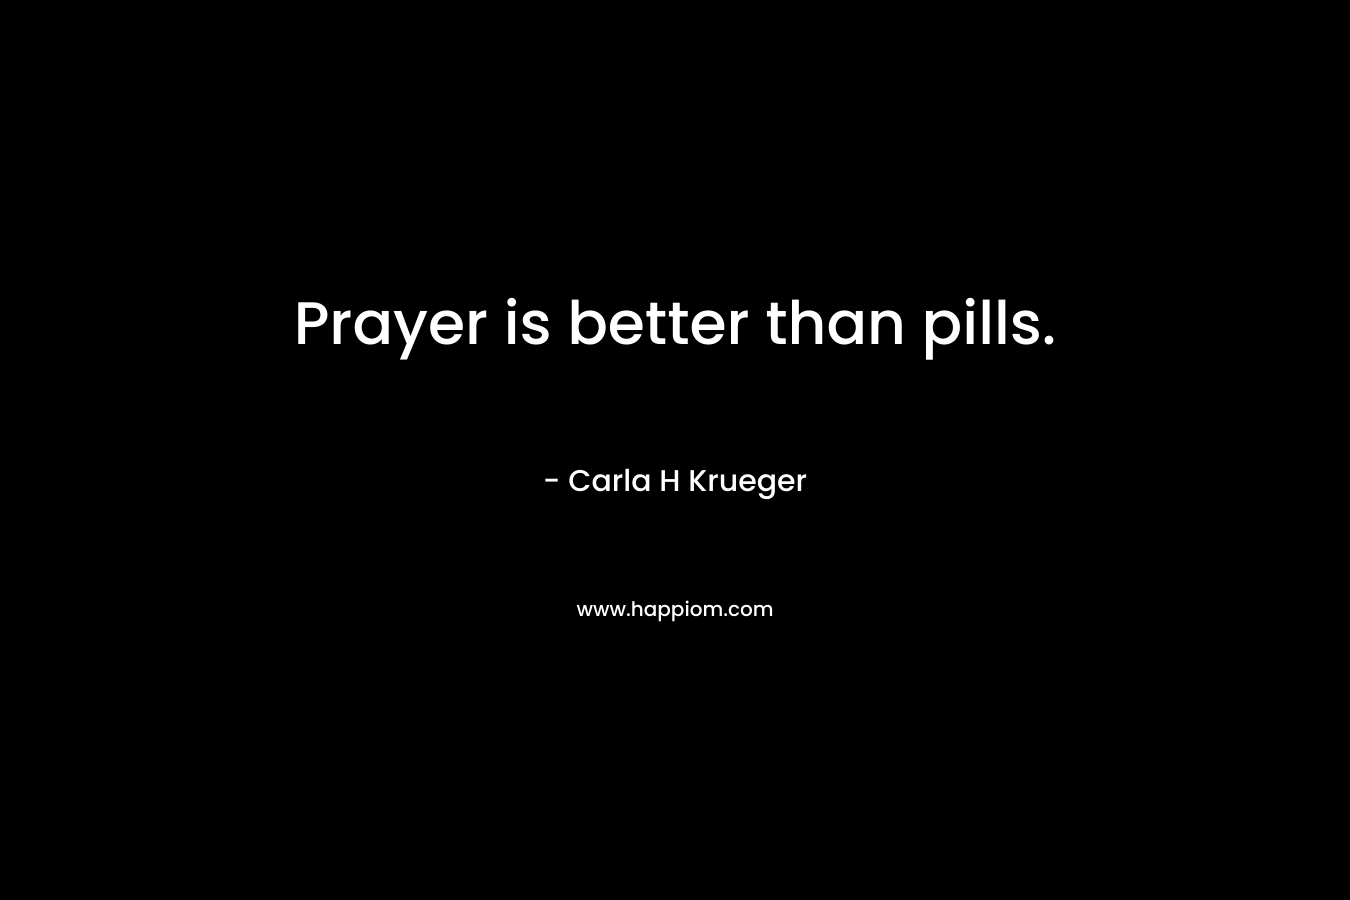 Prayer is better than pills.